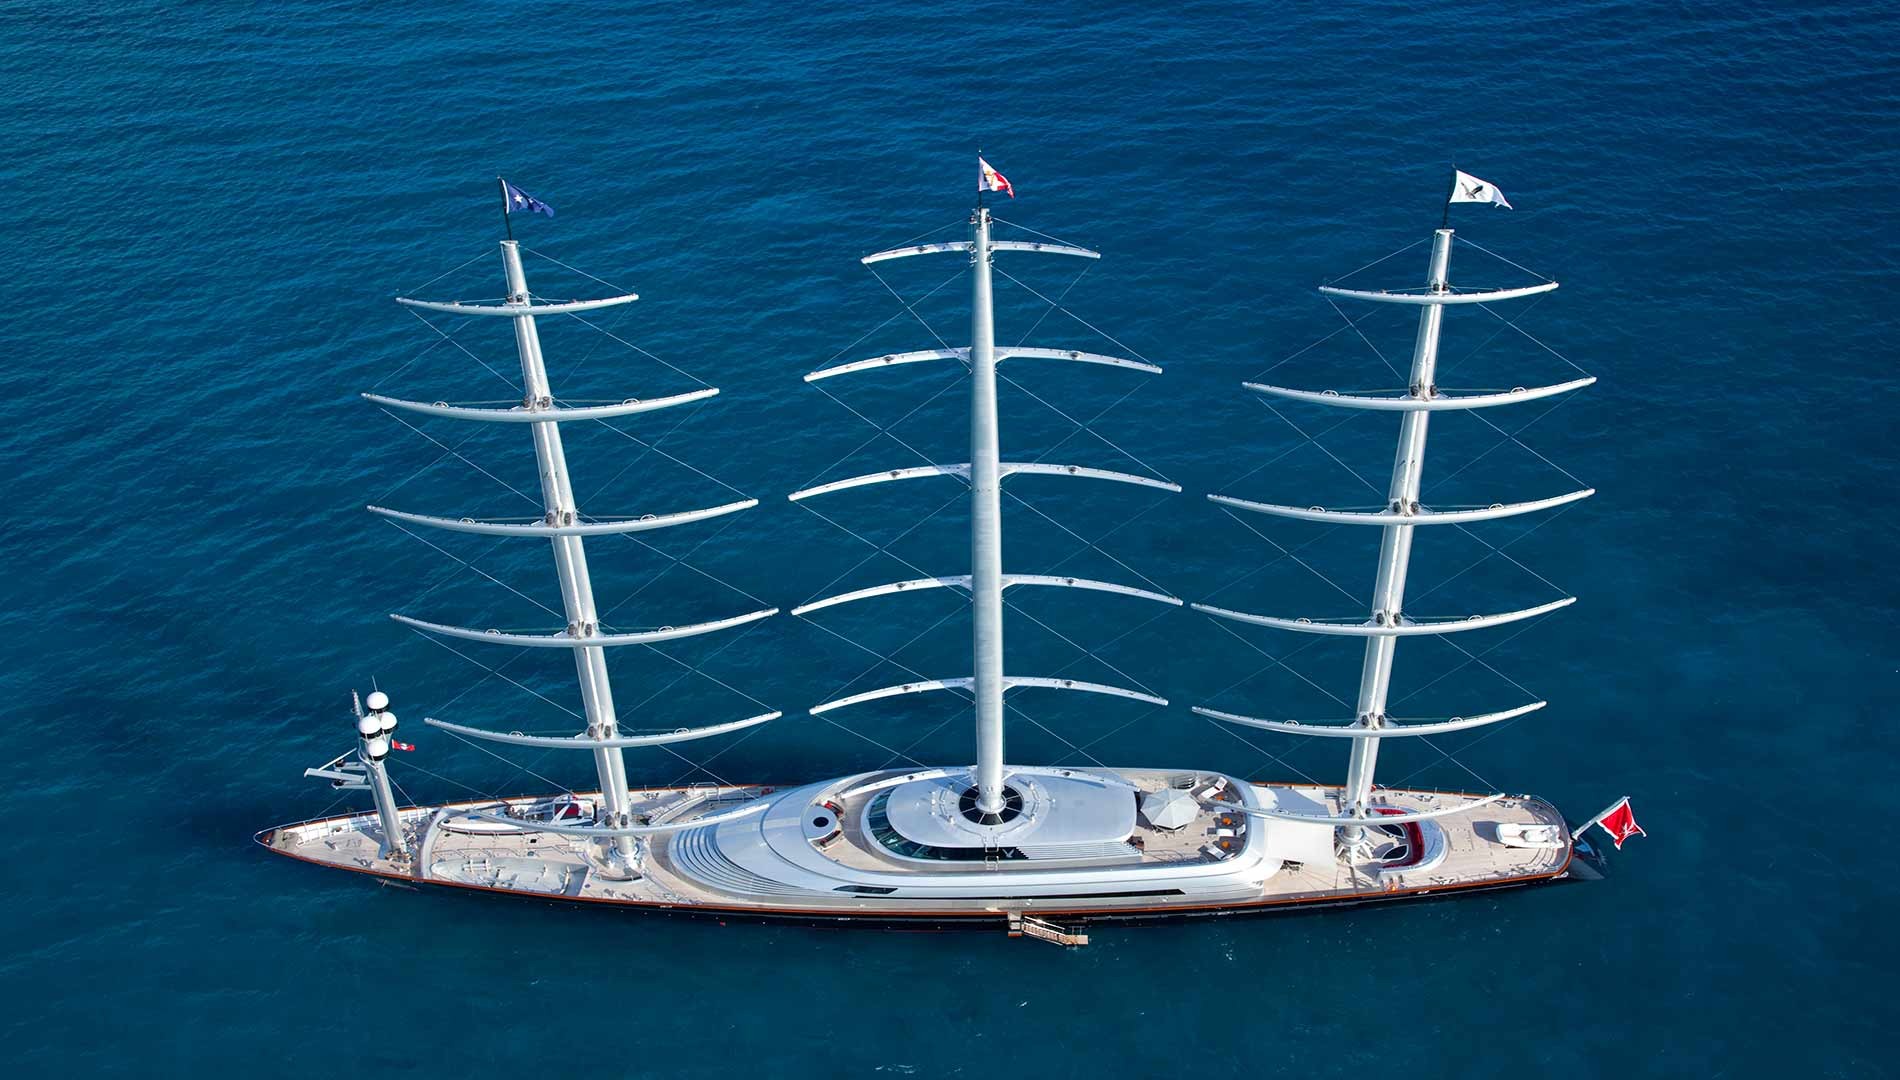 Nel golfo il Maltese Falcon, la barca più grande del mondo